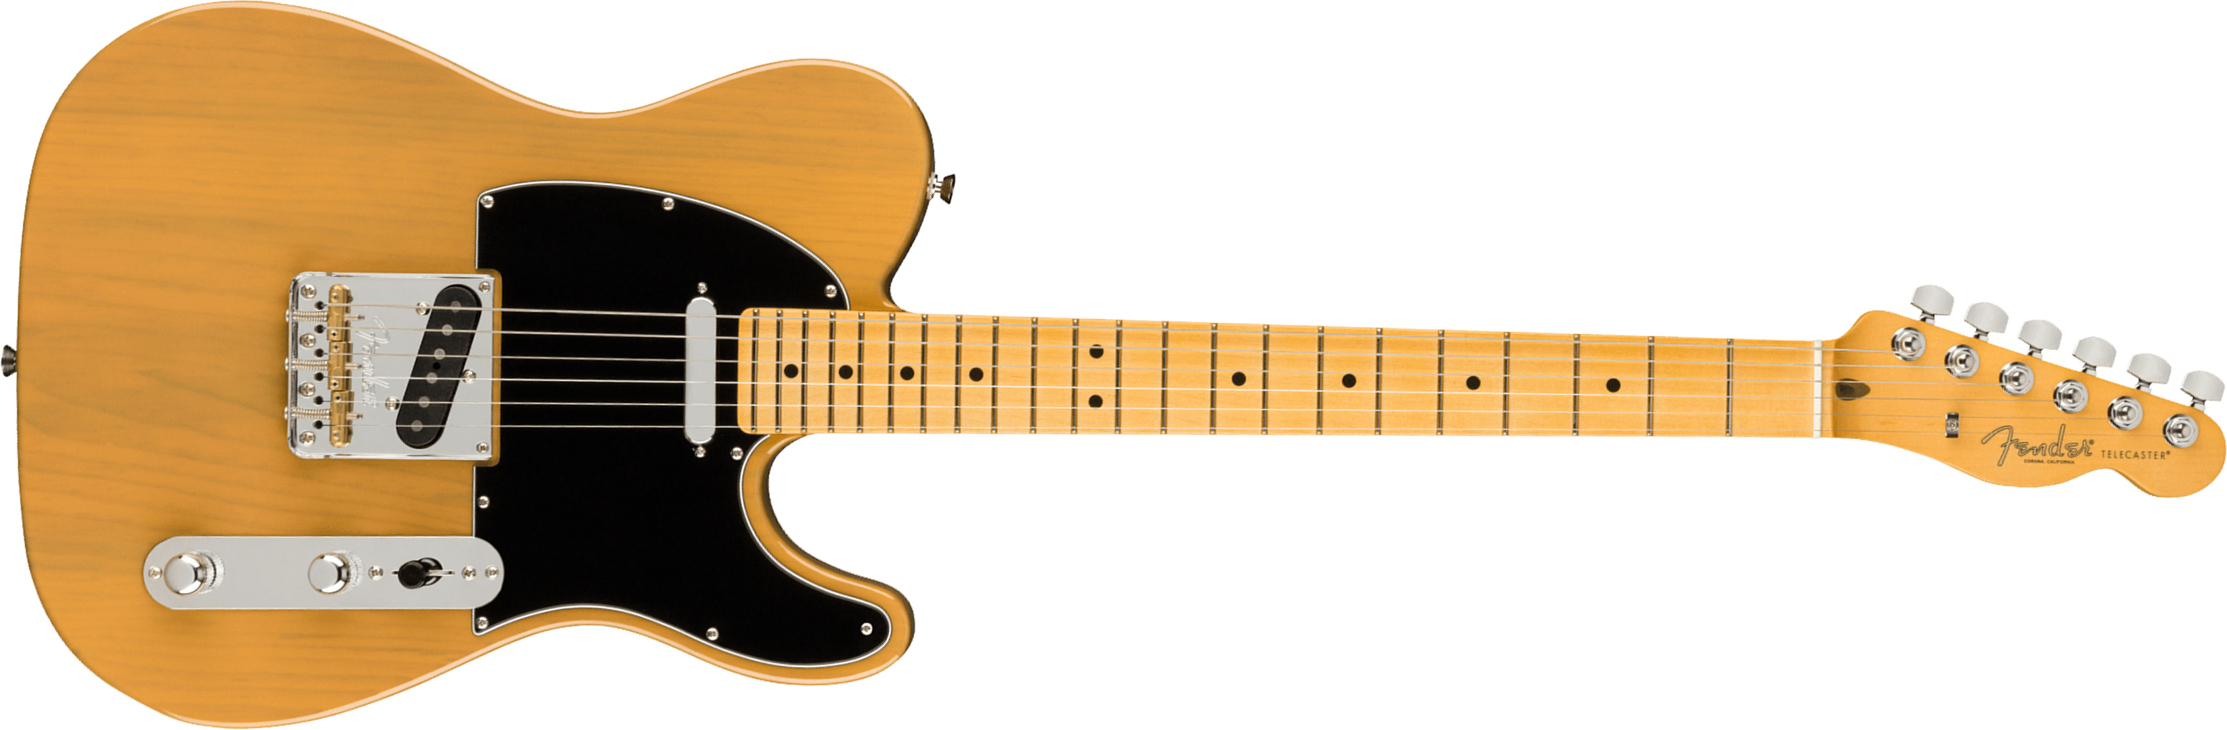 Fender Tele American Professional Ii Usa Mn - Butterscotch Blonde - E-Gitarre in Teleform - Main picture